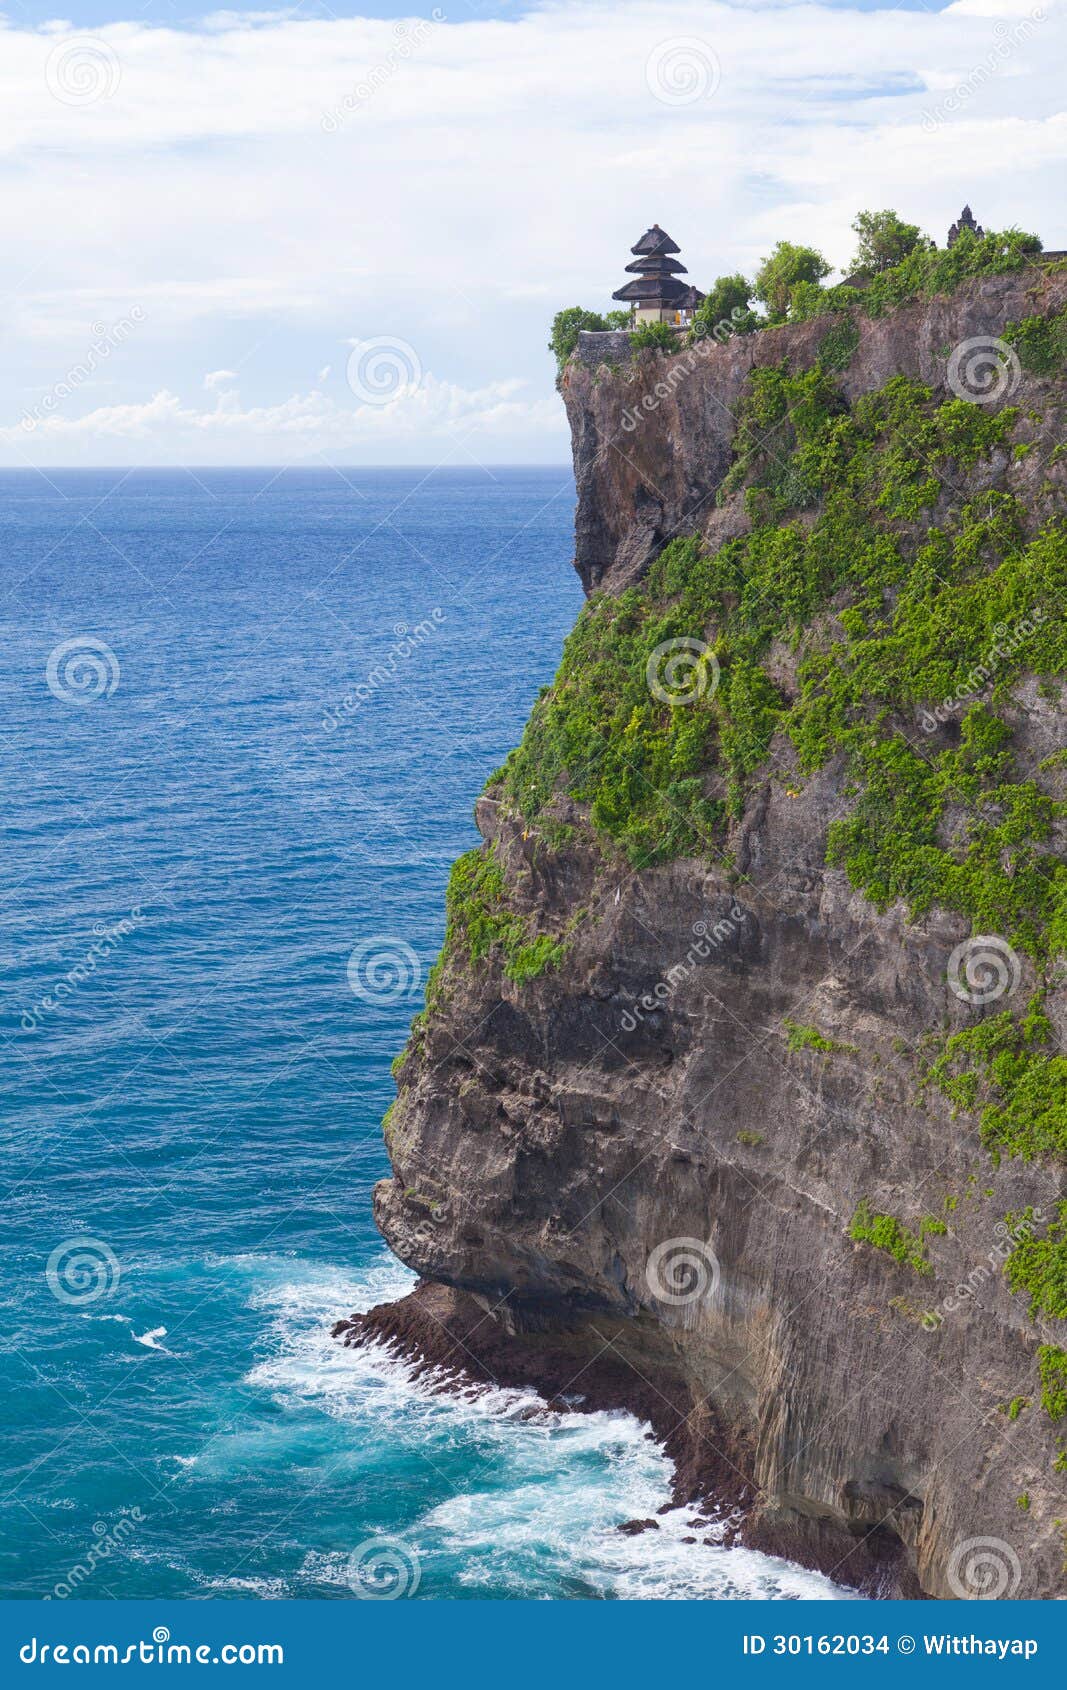 Bali Coastline Stock Photo Image Of Landscape Nature 30162034